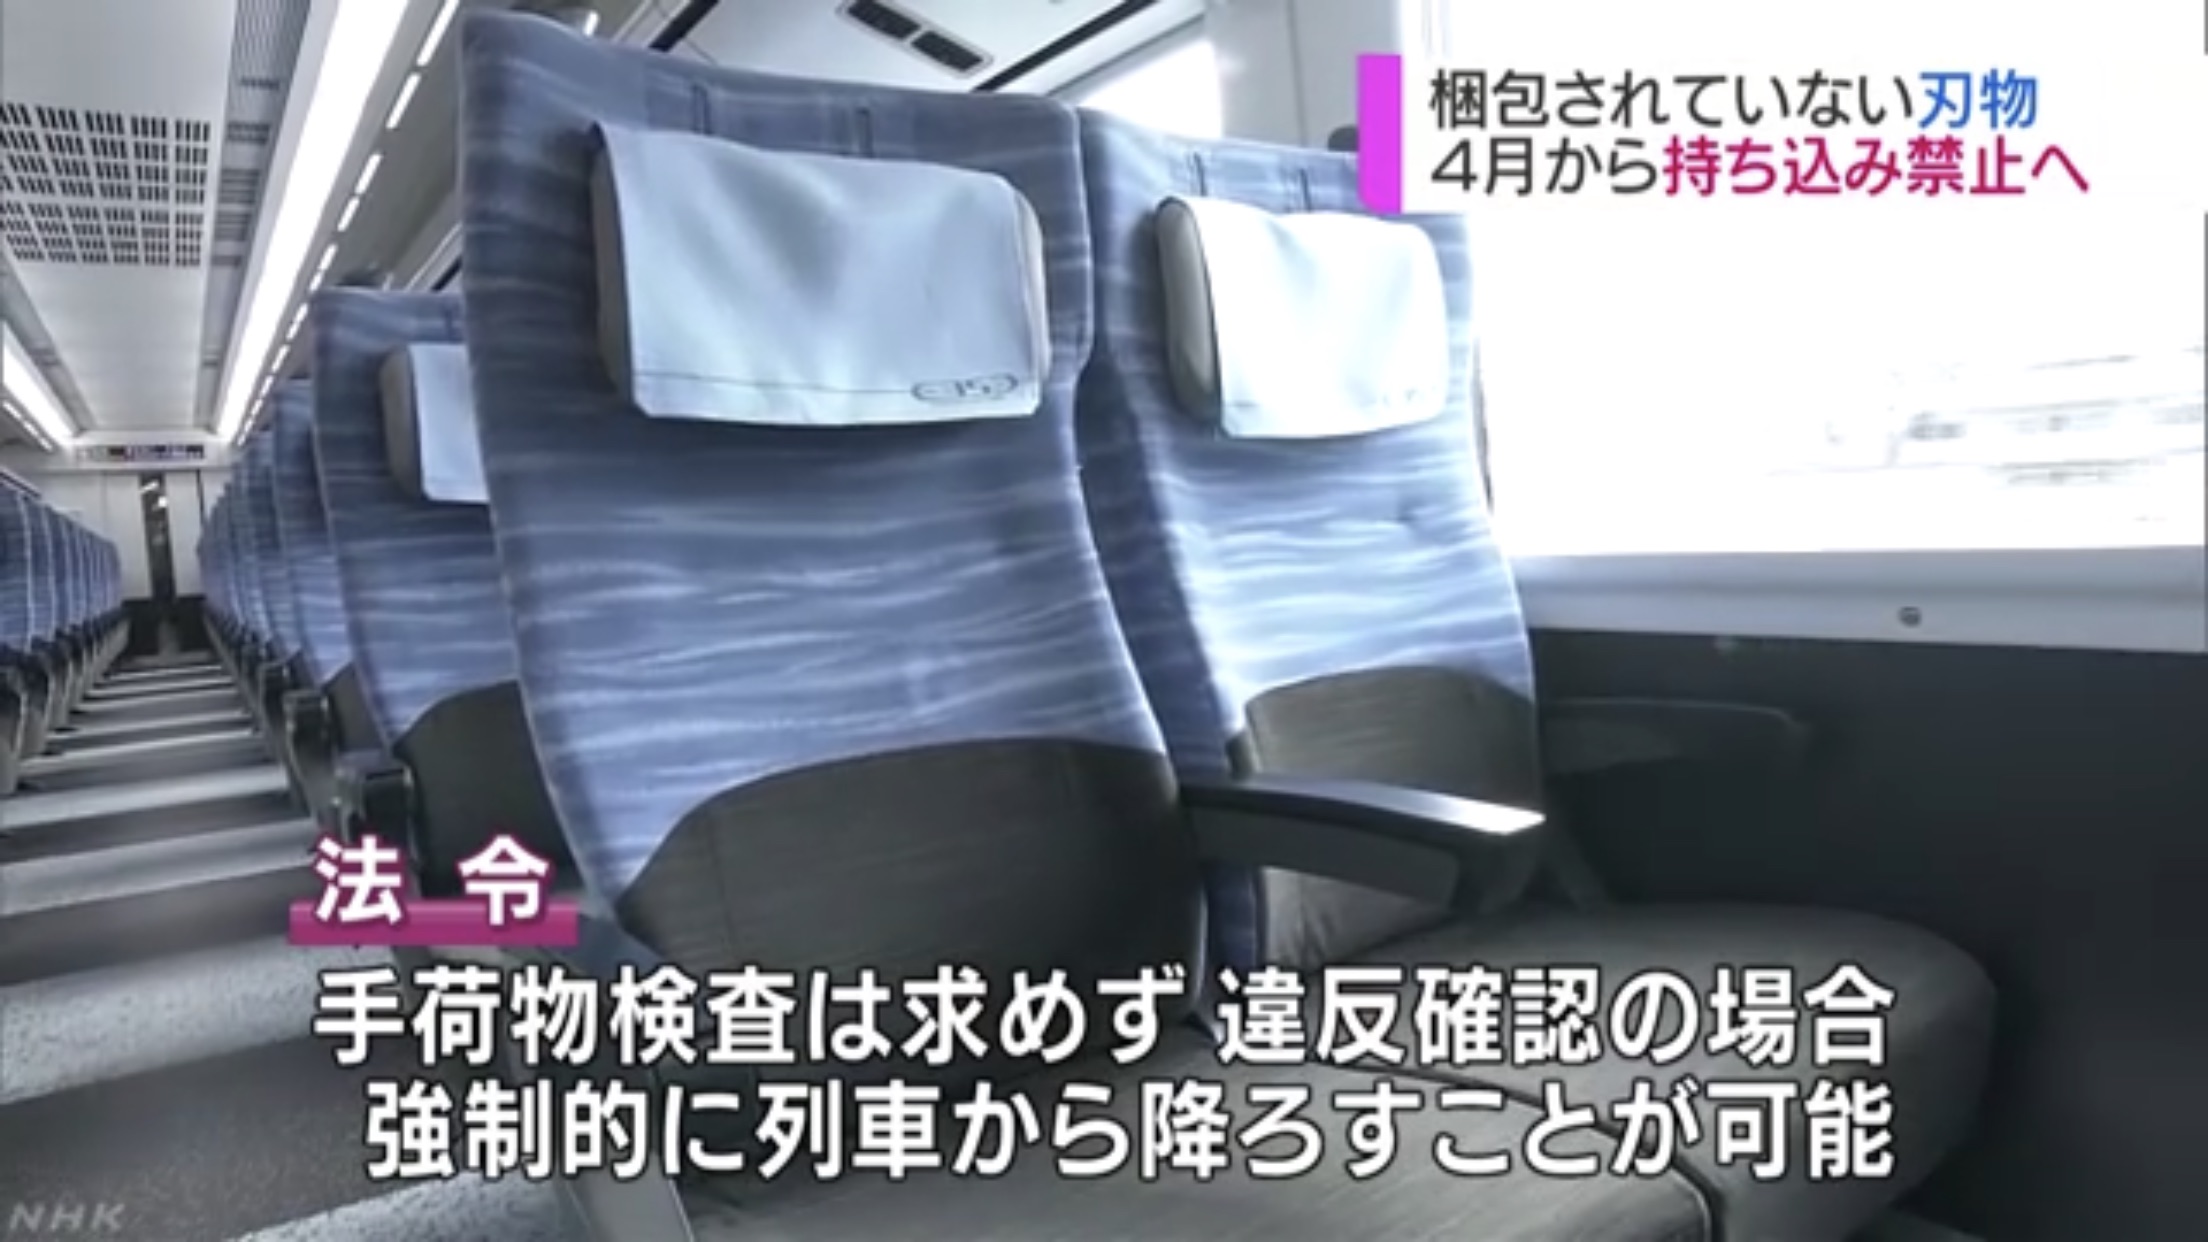 กฎระเบียบรถไฟในญี่ปุ่นออกใหม่